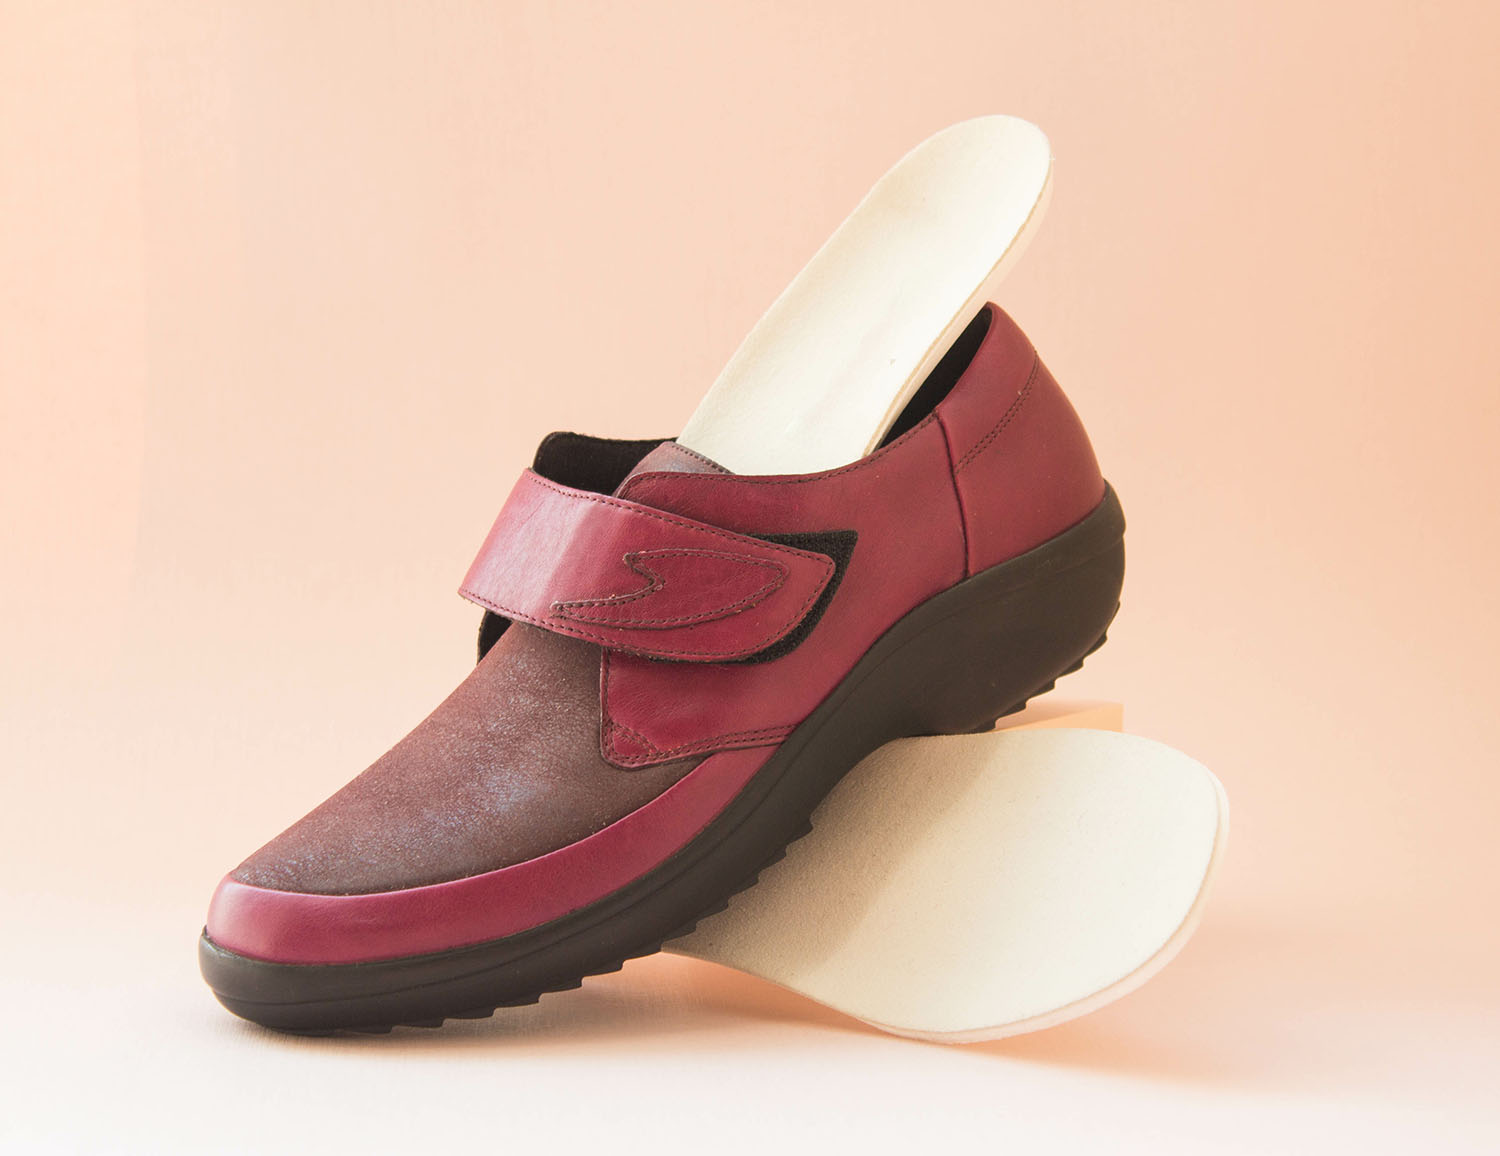 Chaussure orthopédique • Boutique orthopédique (FR)